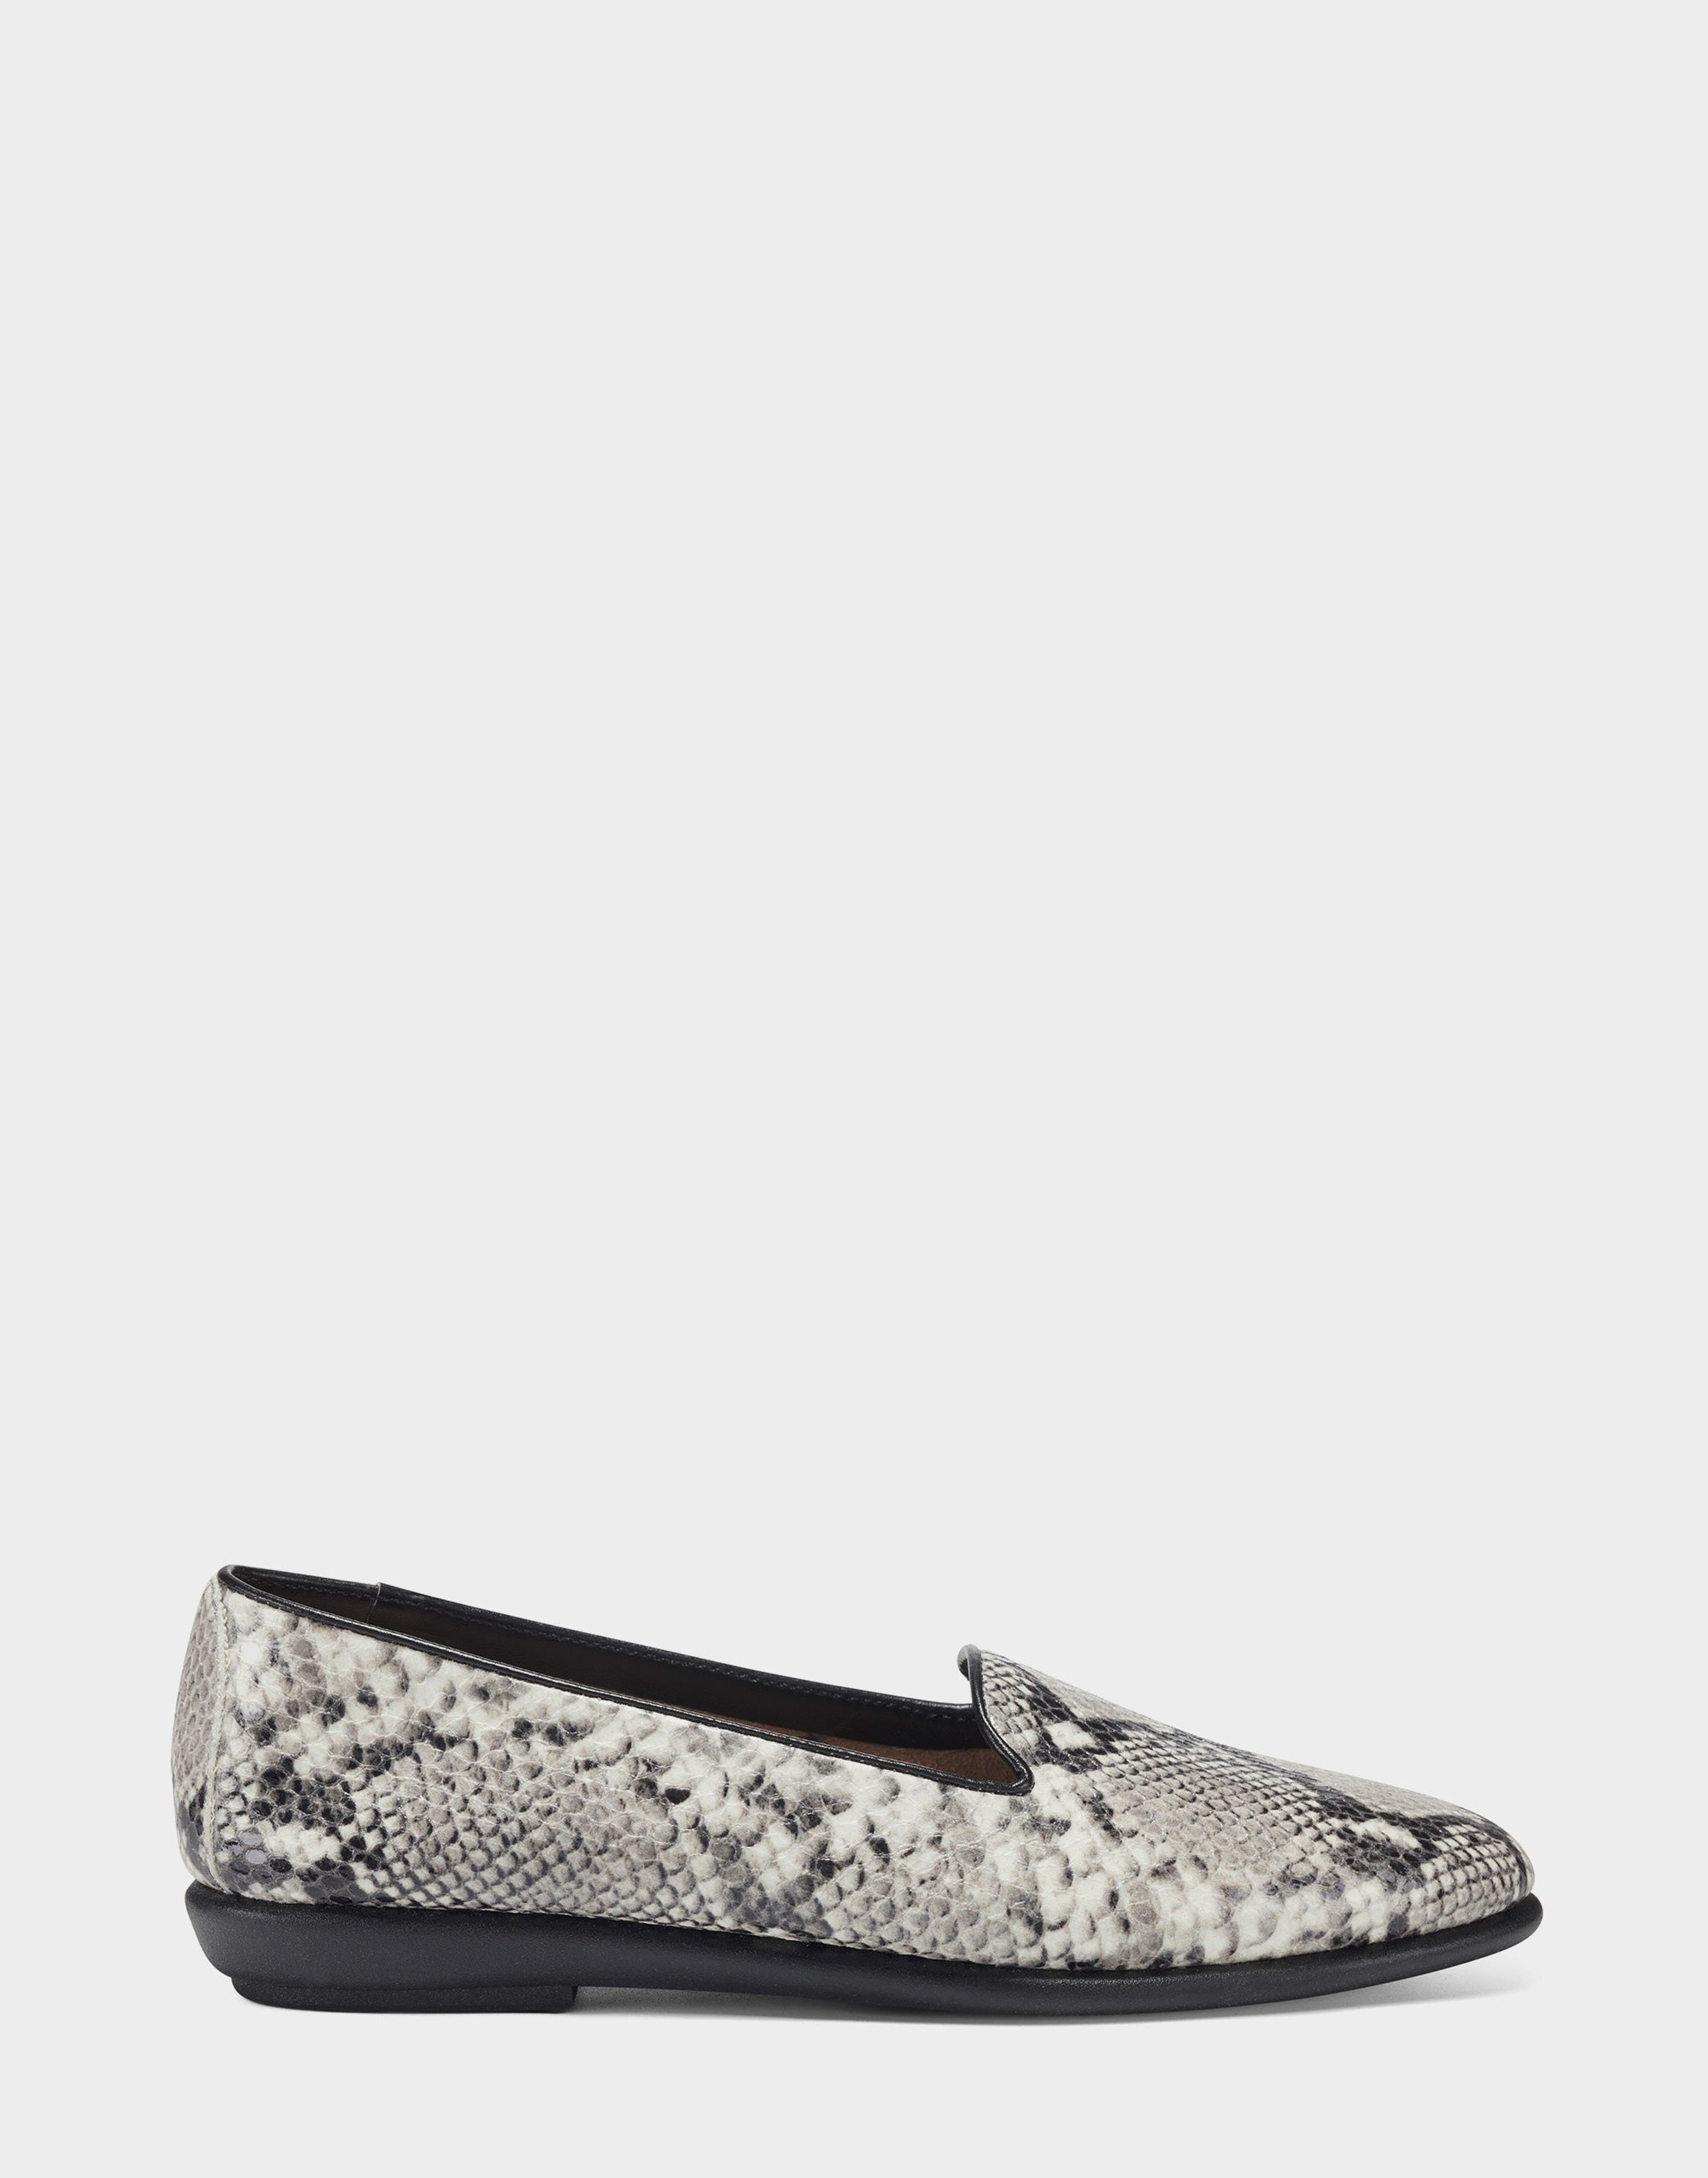 Aerosoles Betunia Loafer In Grey